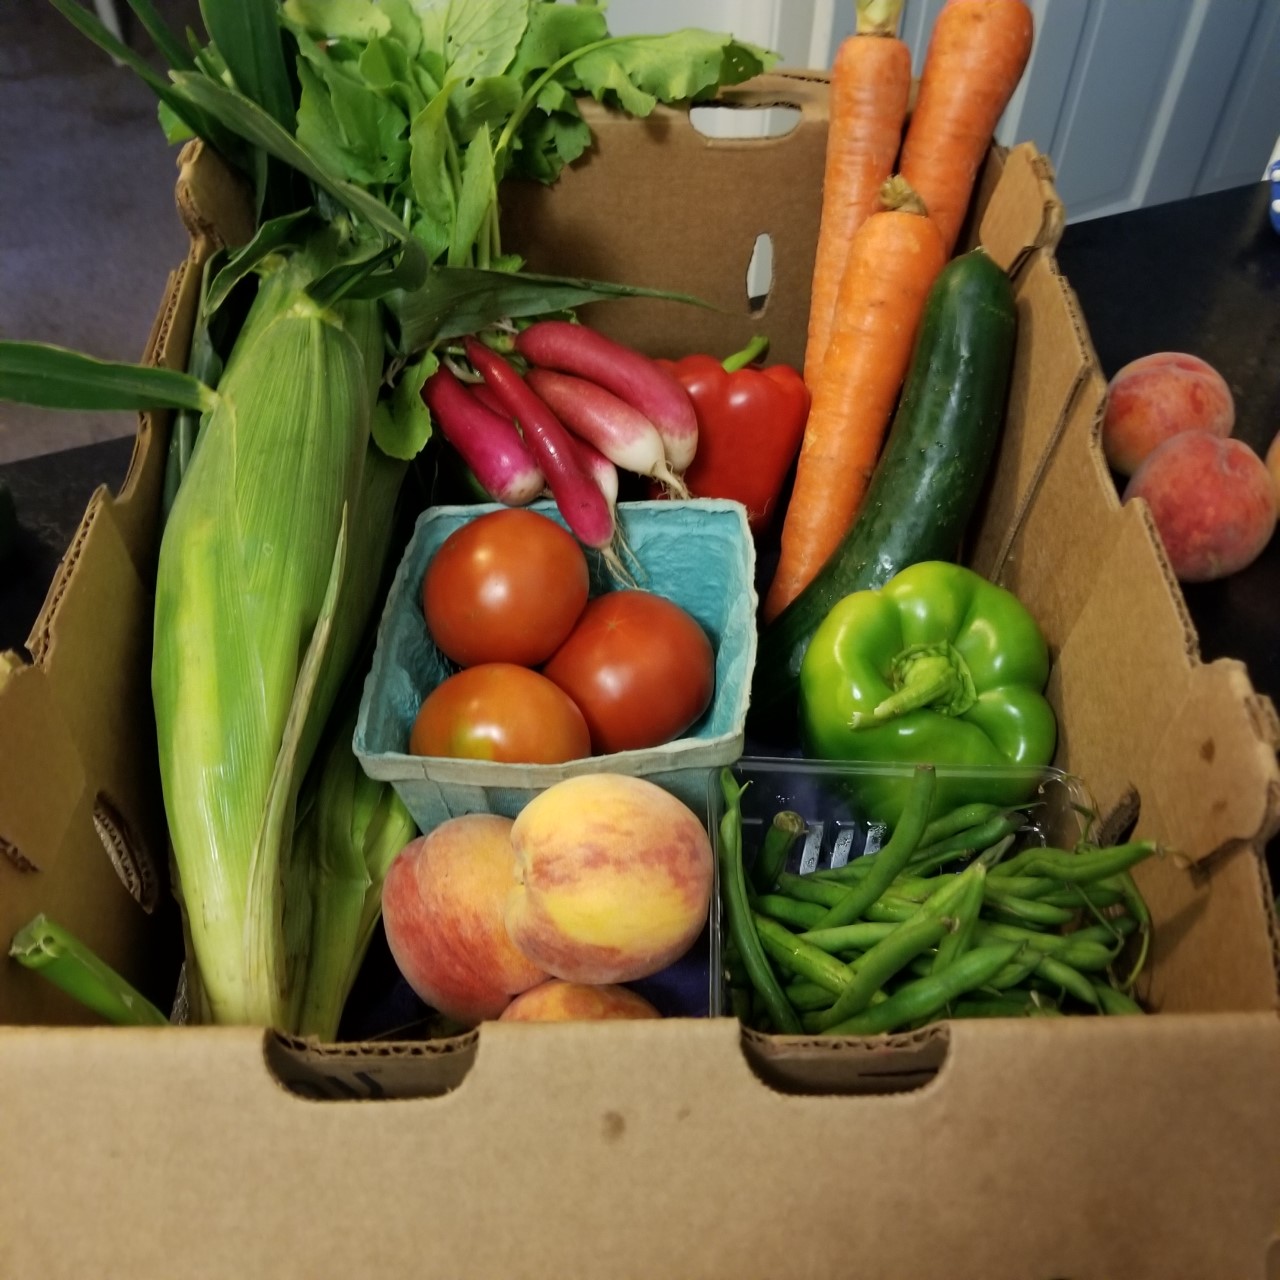 produce box from a neighbor